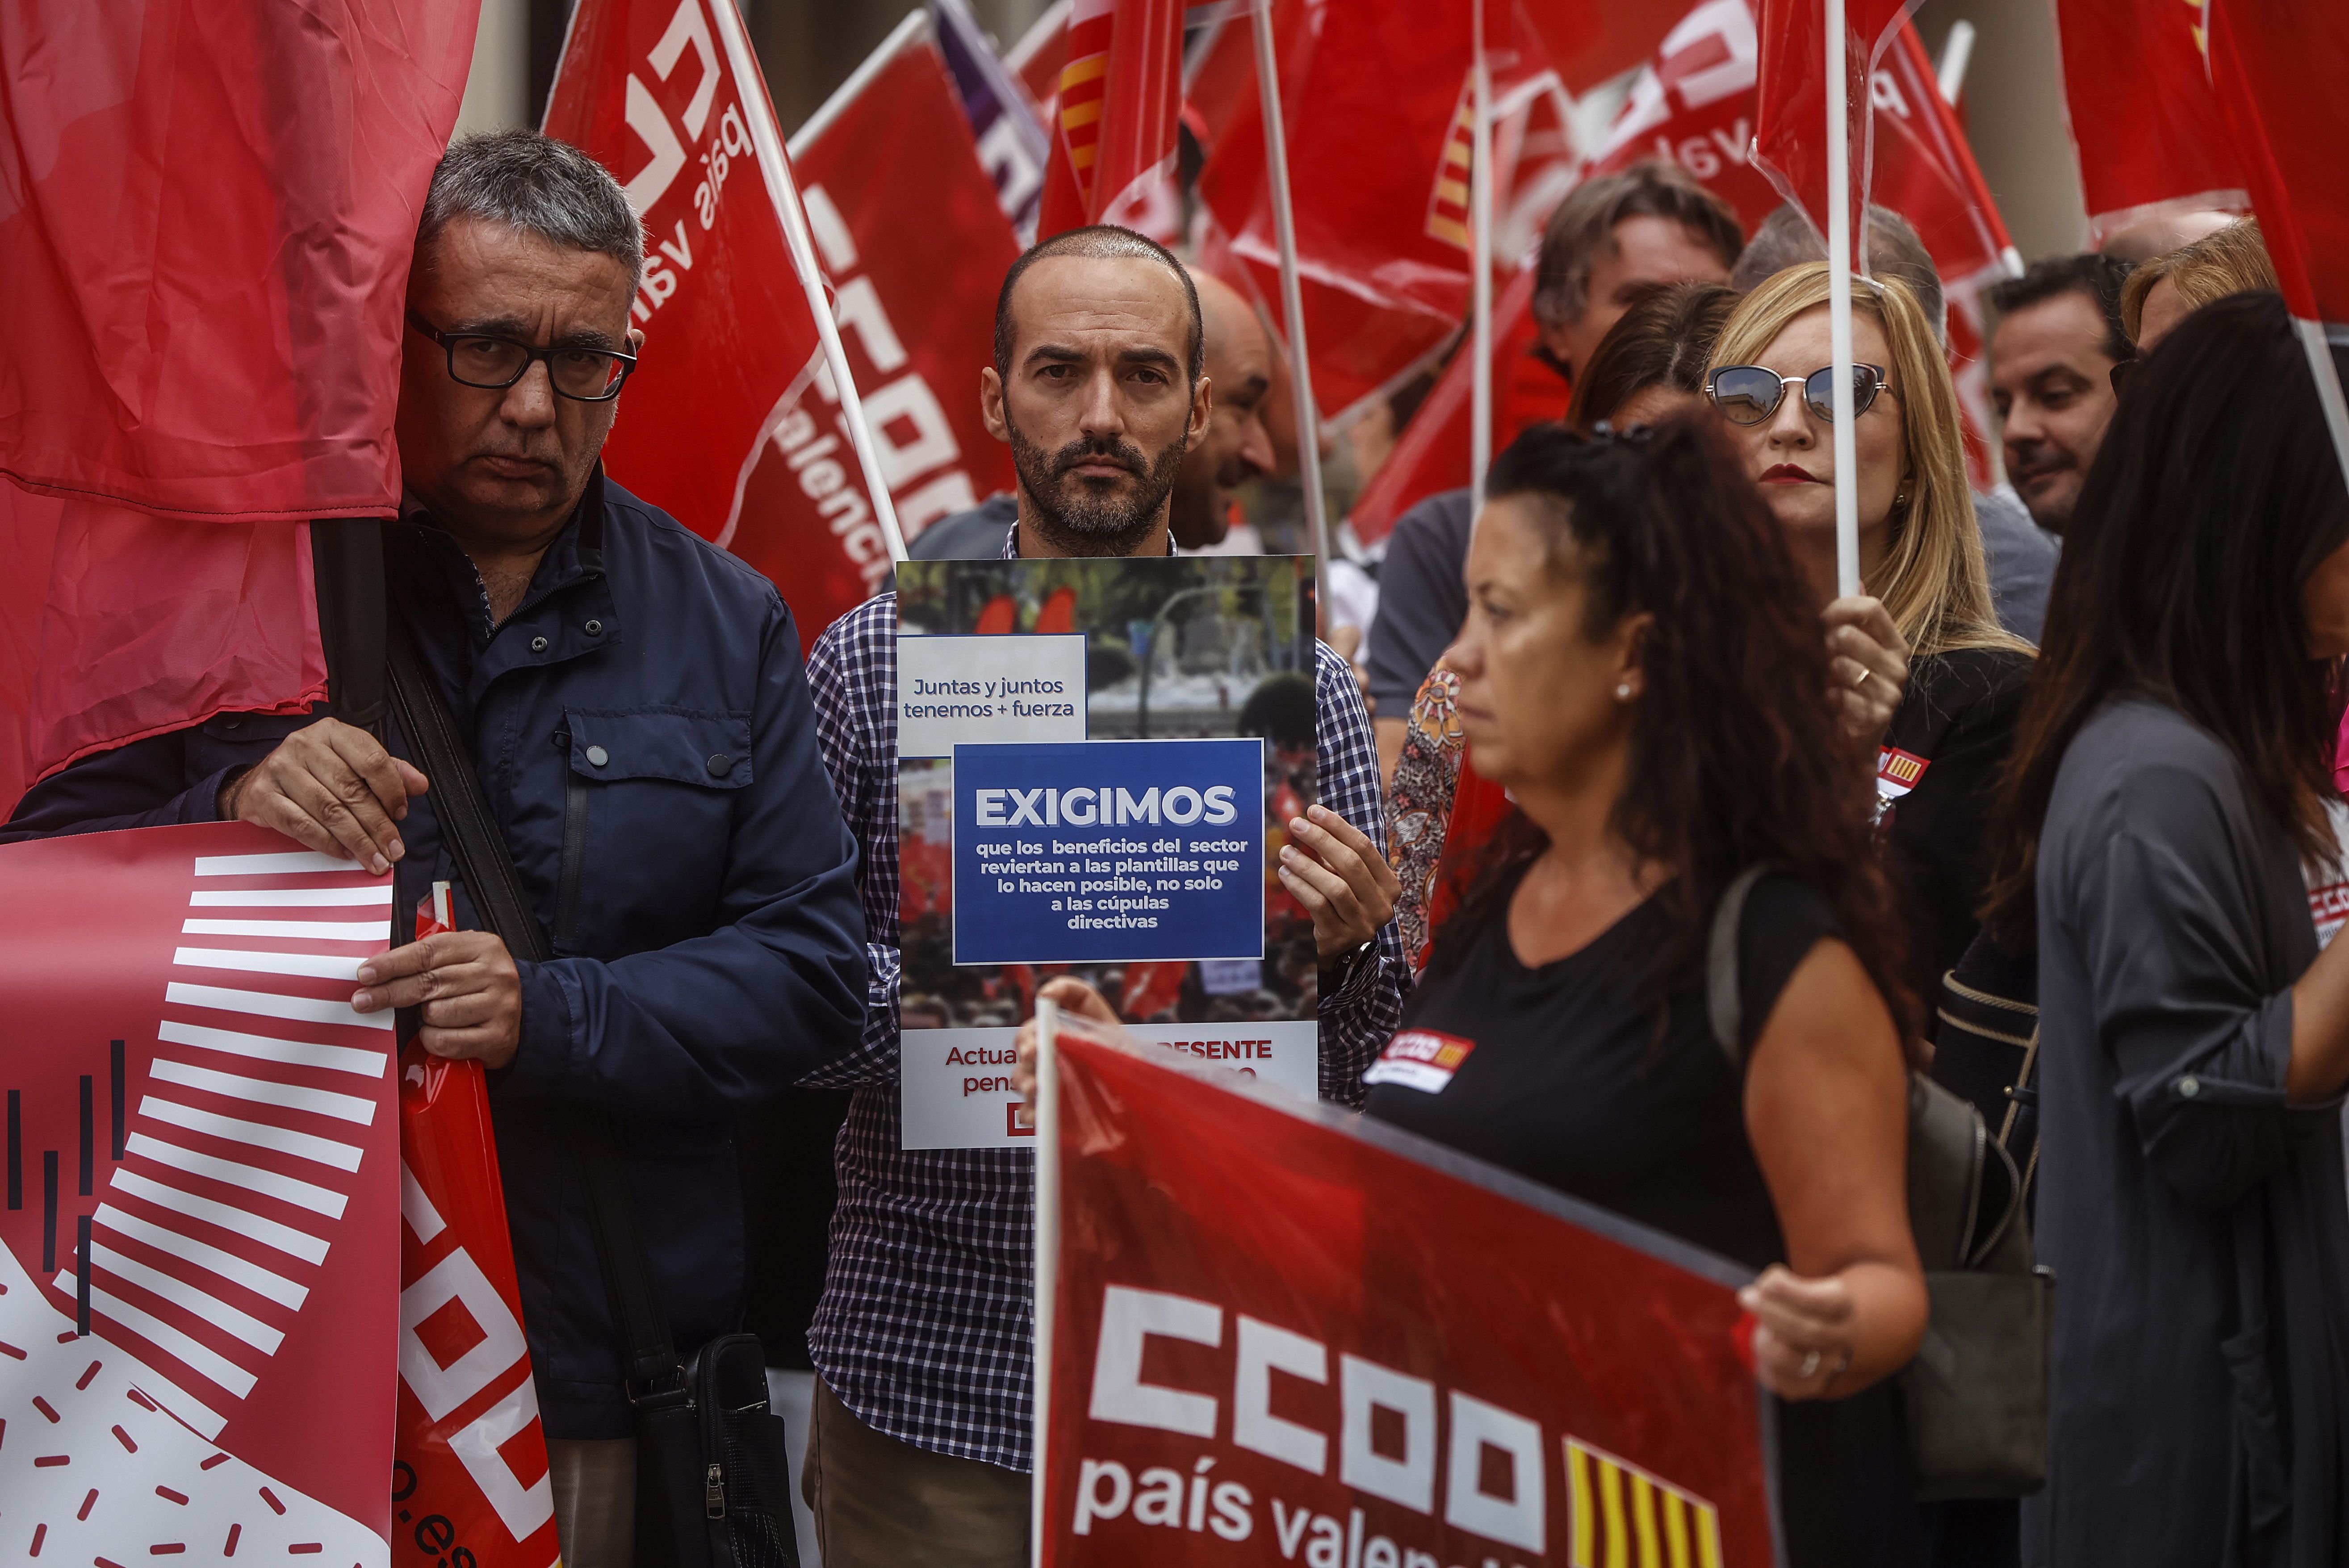 Los trabajadores de la banca se movilizan por un salario acorde con los beneficios del sector. Foto: EuropaPress